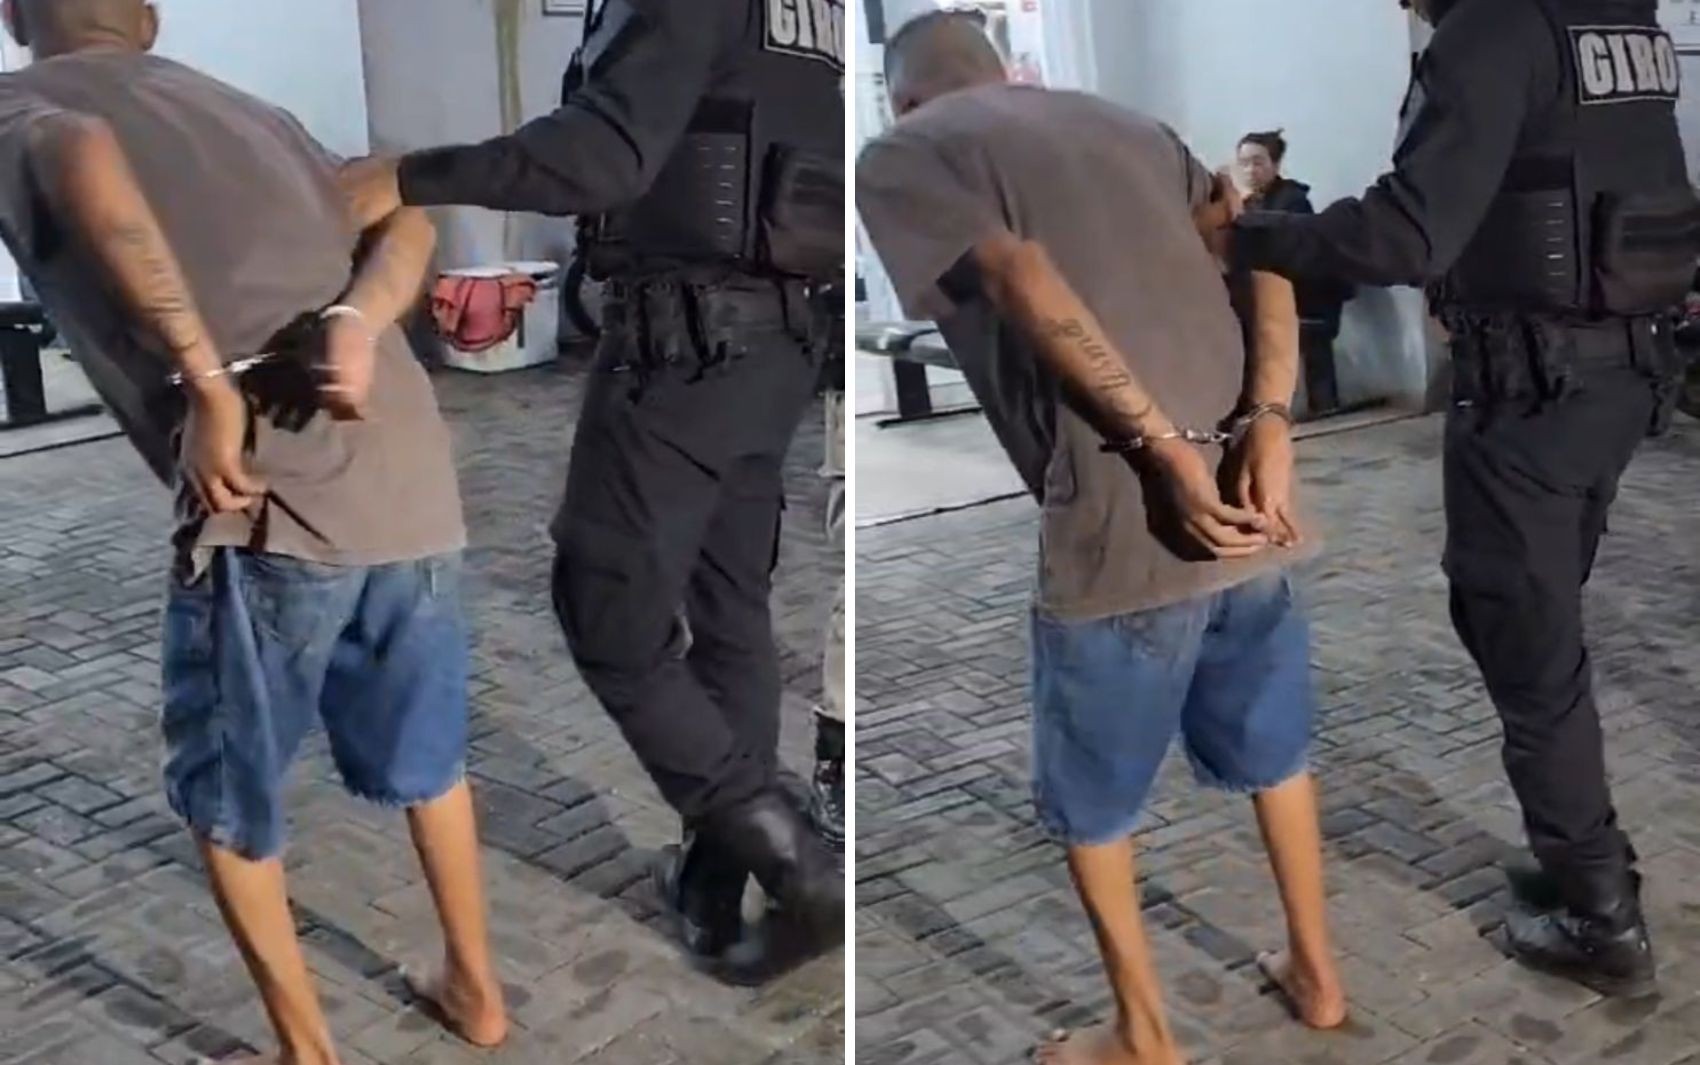 Traficante pula do 2º andar de sobrado para fugir da polícia e sai mancando, diz PM; vídeo